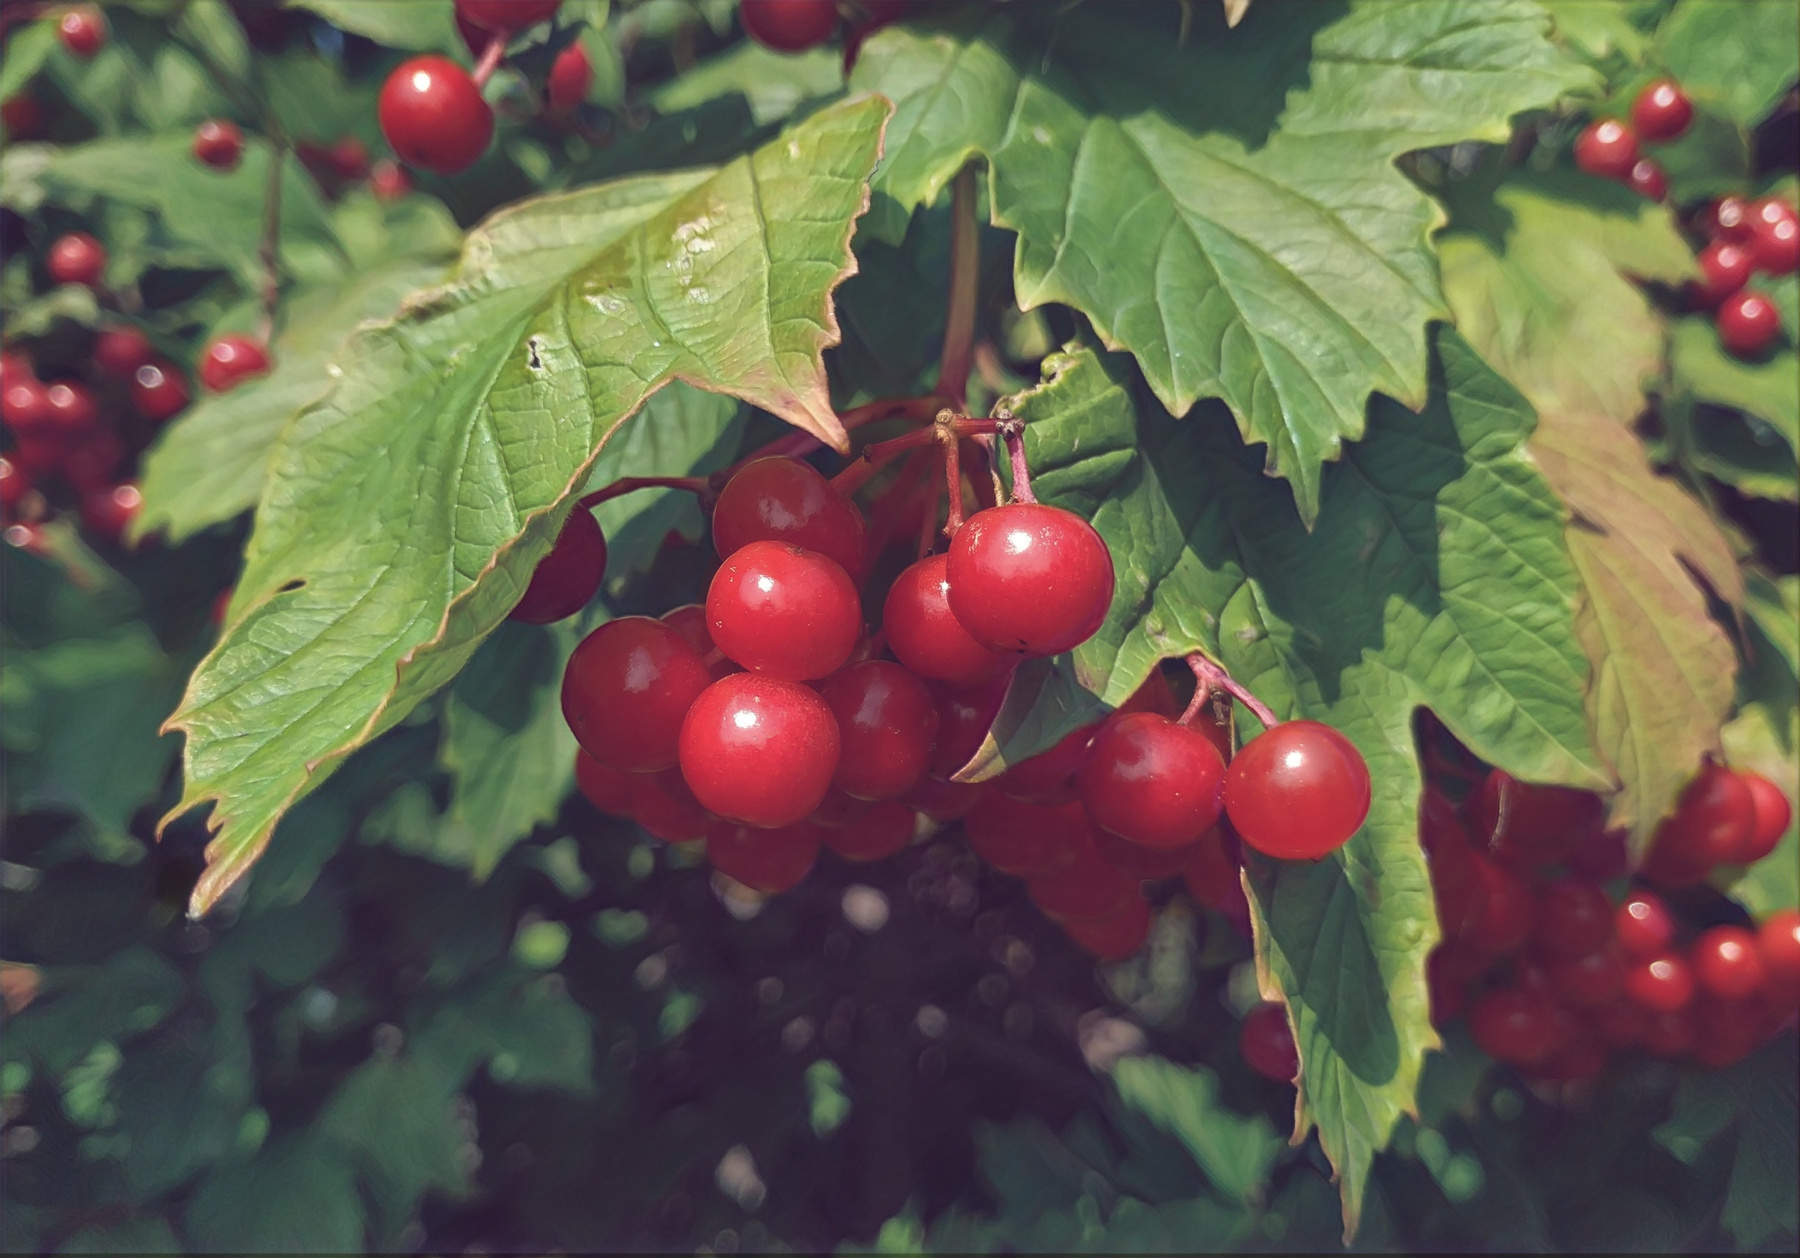 "Temptation" август вдохновение творчество гроздья калины красные бусины